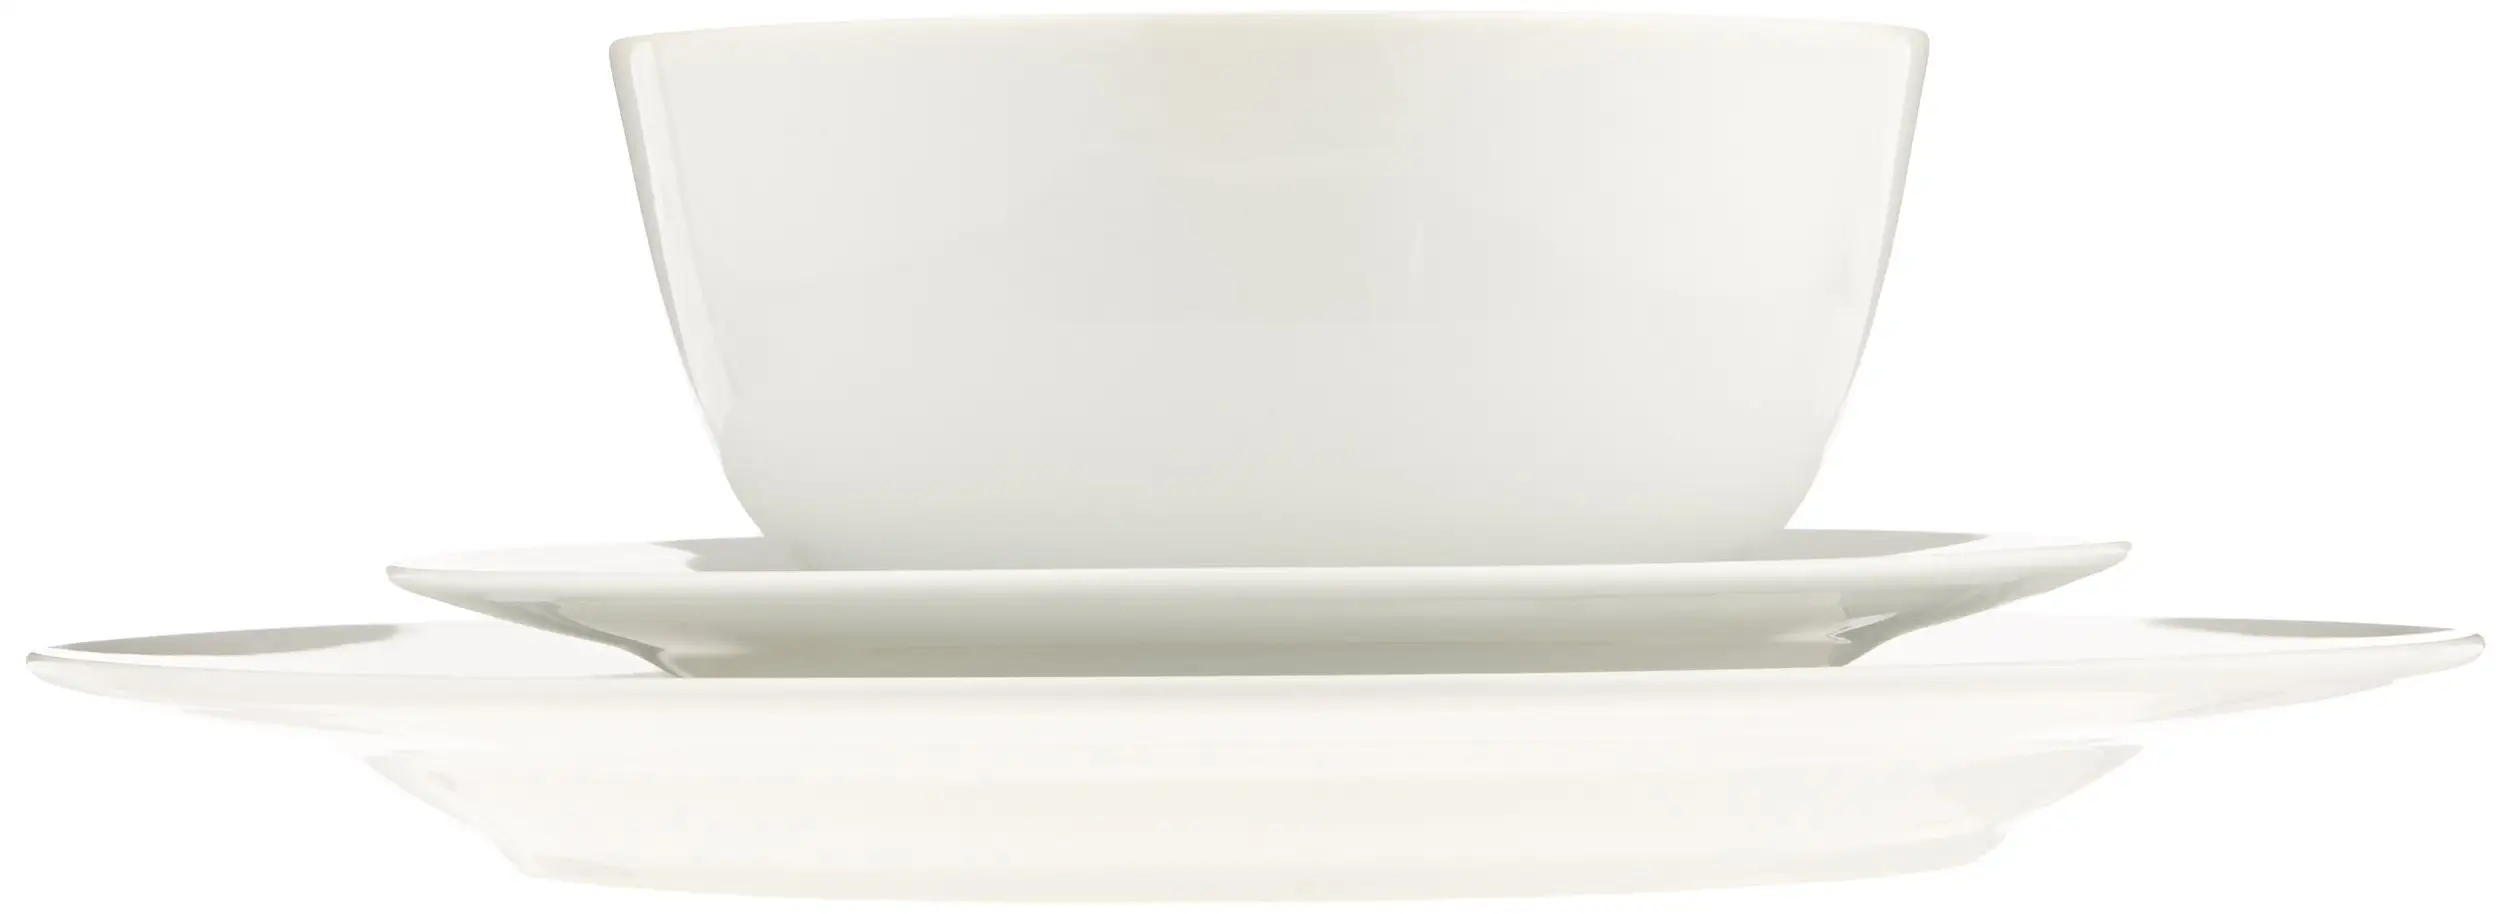 ชุดจานชามเมลามีนสีขาว18ชิ้น